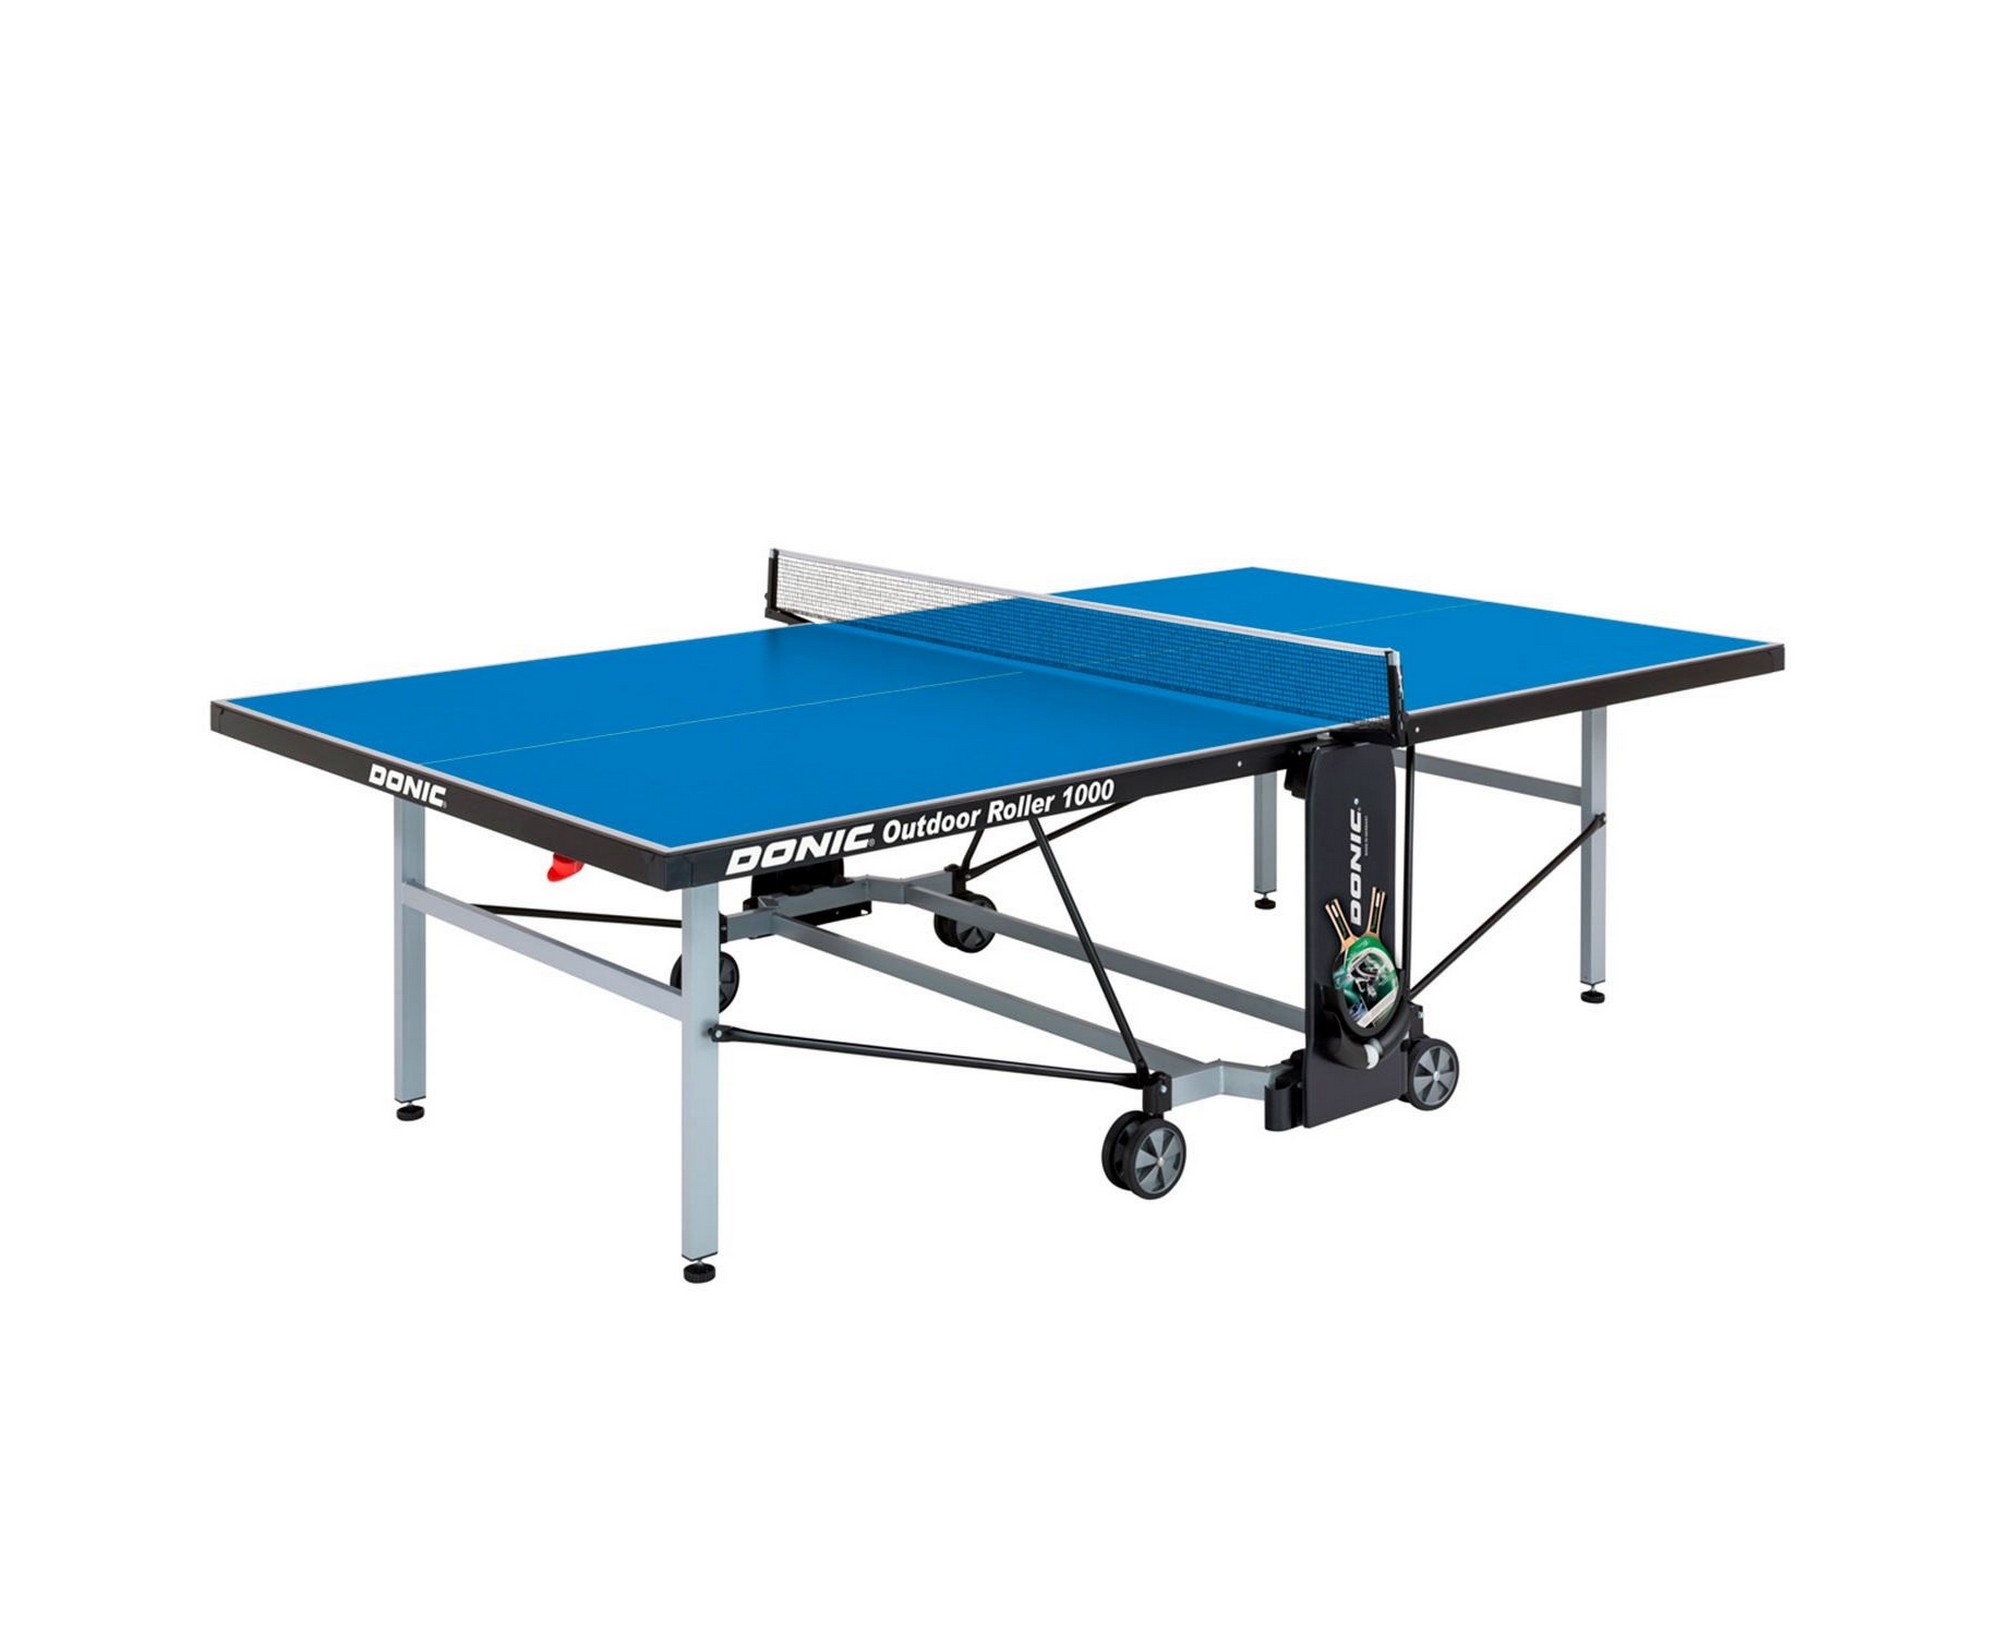 Теннисный стол Donic Outdoor Roller 1000 230291-B blue 2000_1636